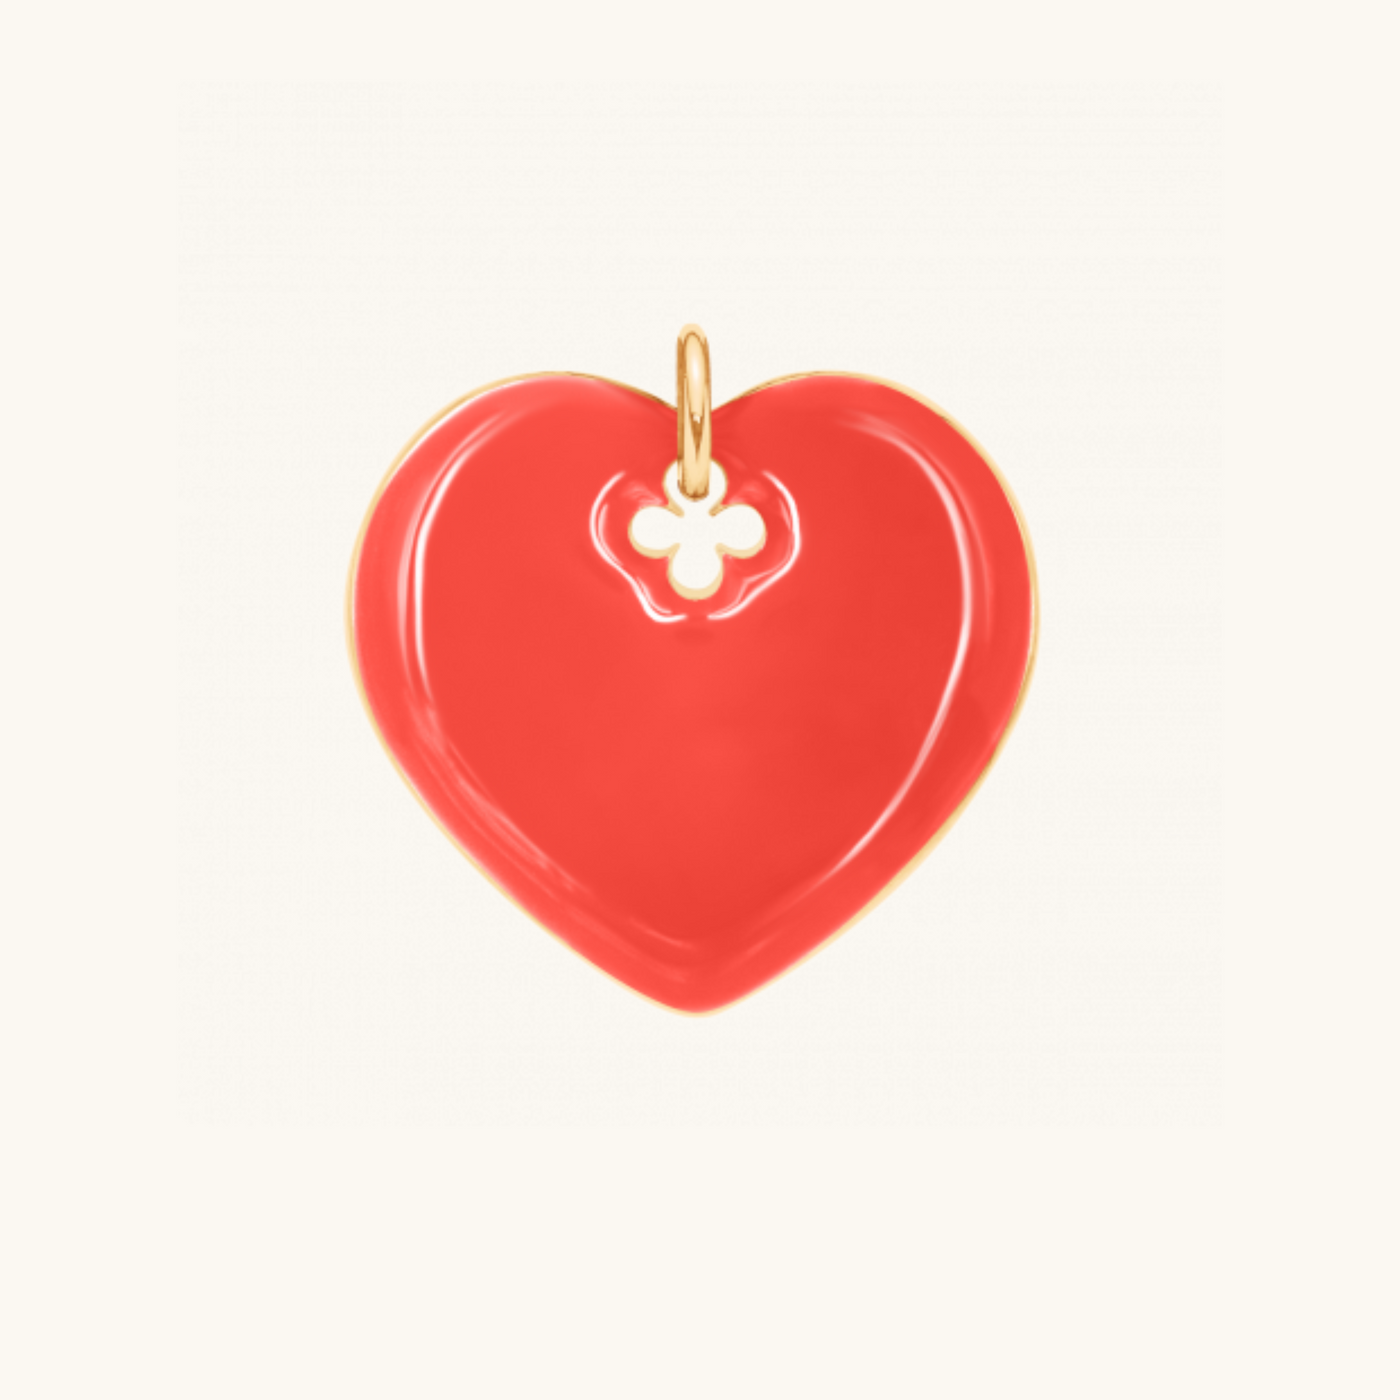 Red Heart Charm - Lilou Paris US